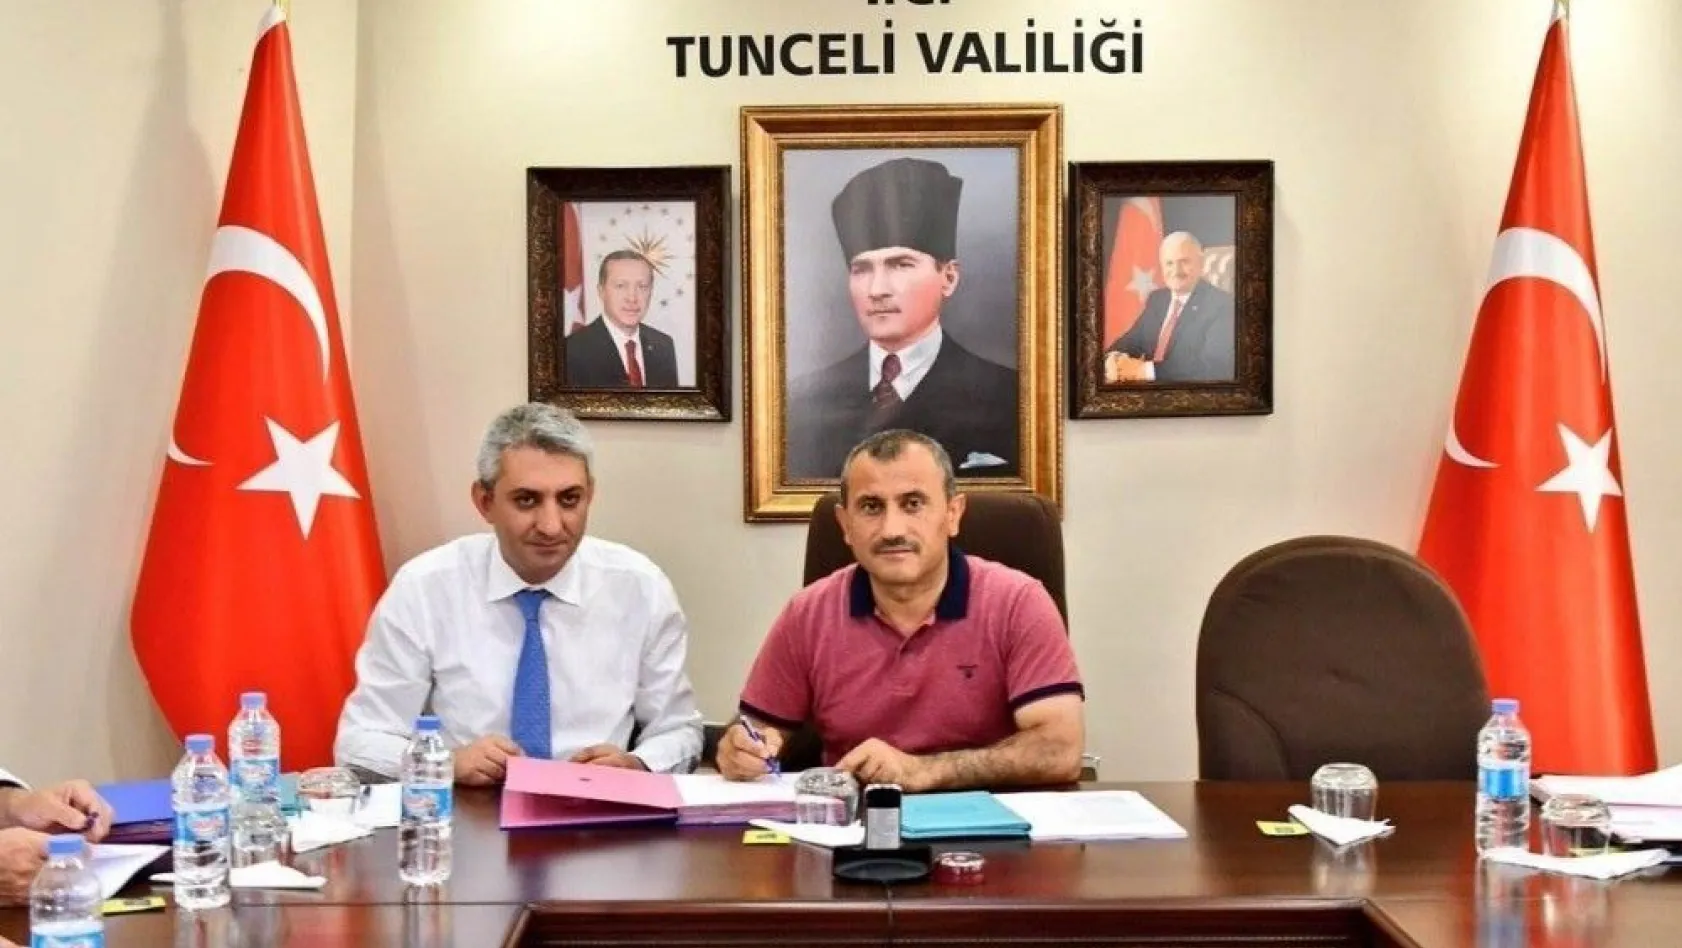 Tunceli'de 'Doğa Sporları Altyapısının Güçlendirilmesi' projesi
